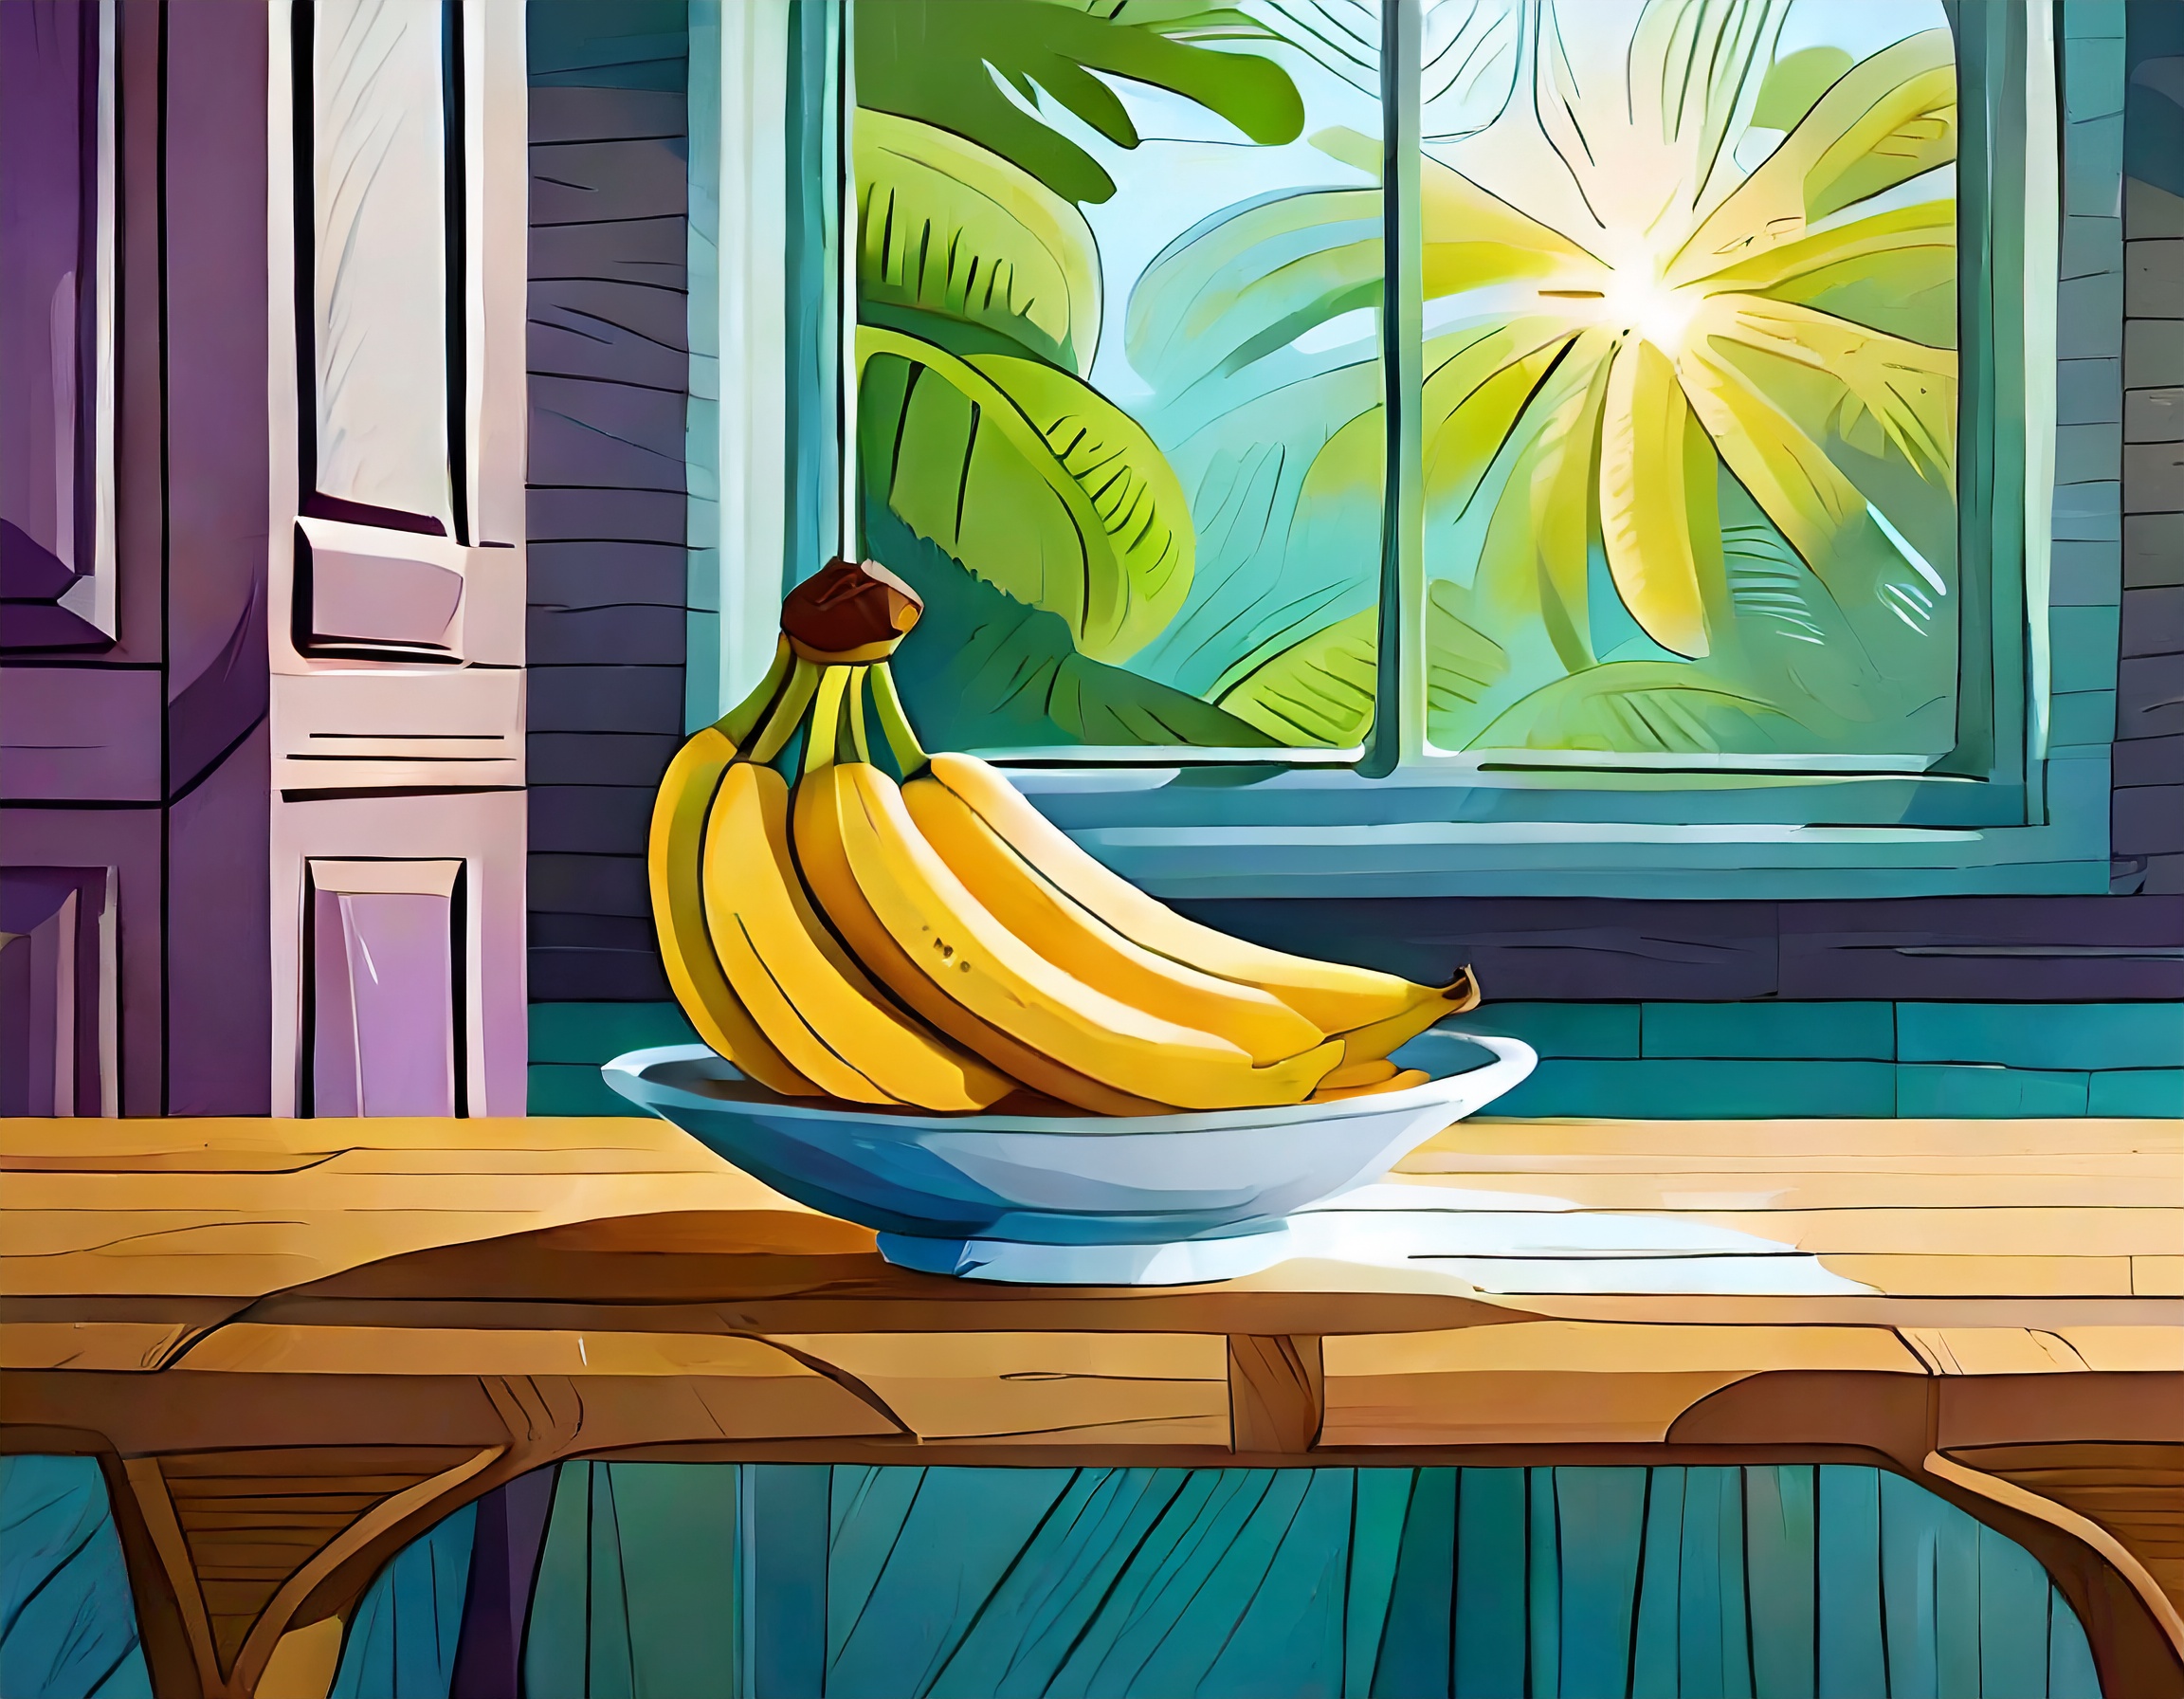 Bananas on Table 